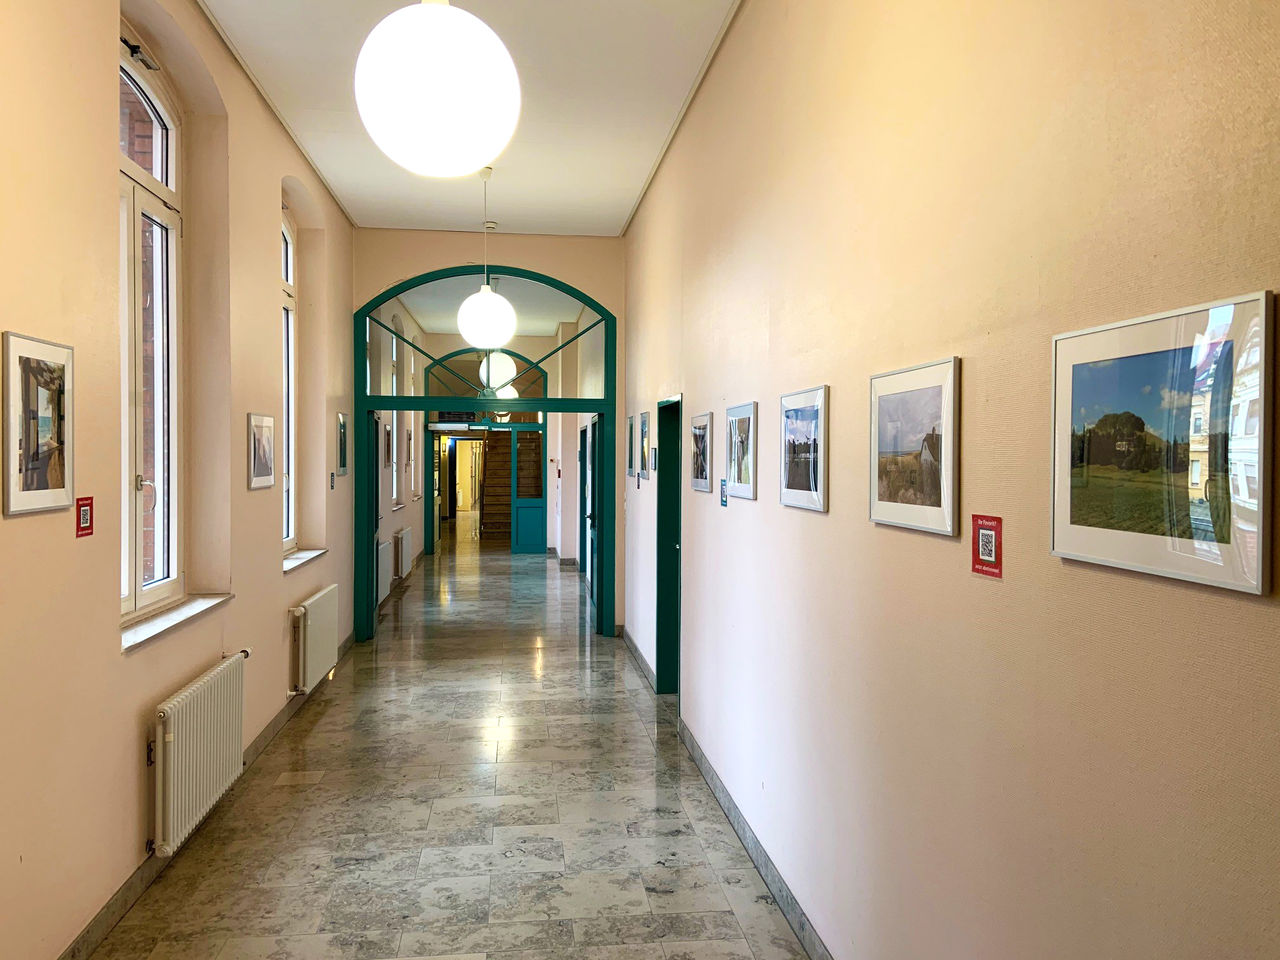 Fotoausstellung in der Helios Klinik Zerbst/Anhalt